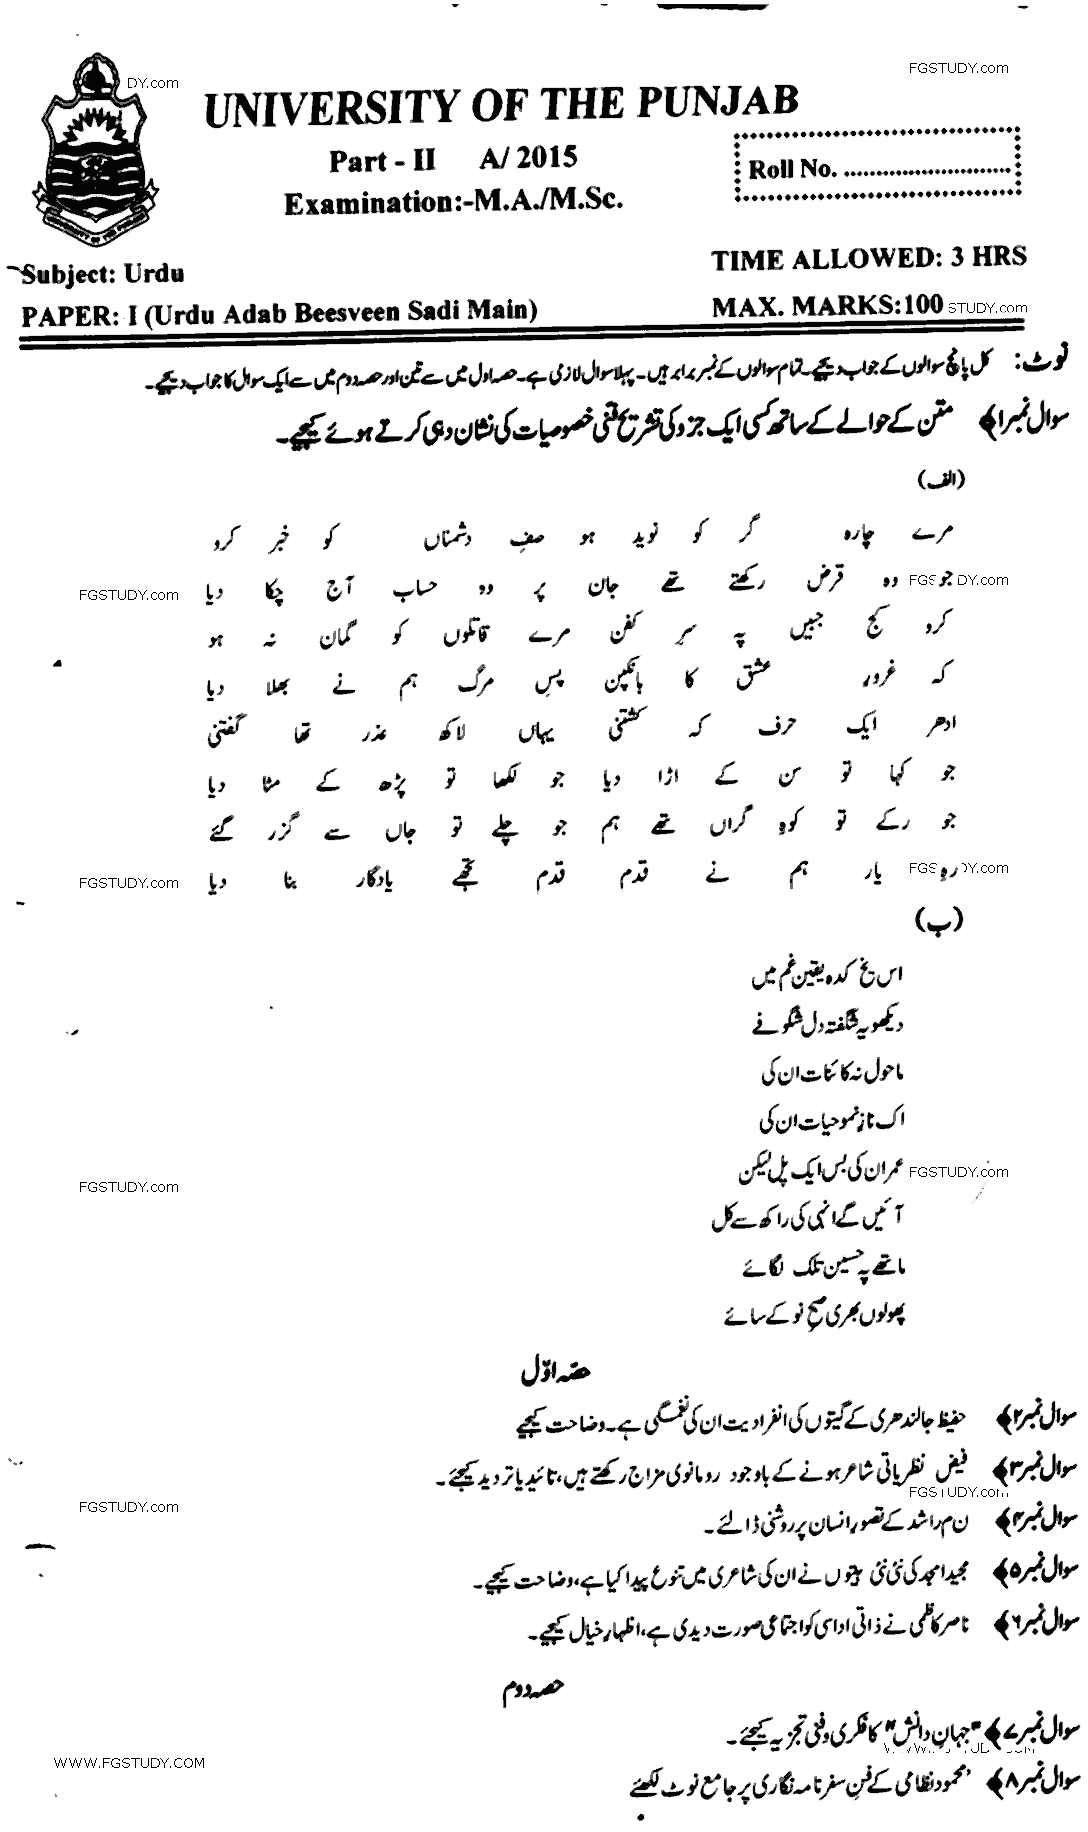 MA Part 2 Urdu Urdu Adab Beesveen Sadi Main Past Paper 2015 Punjab University